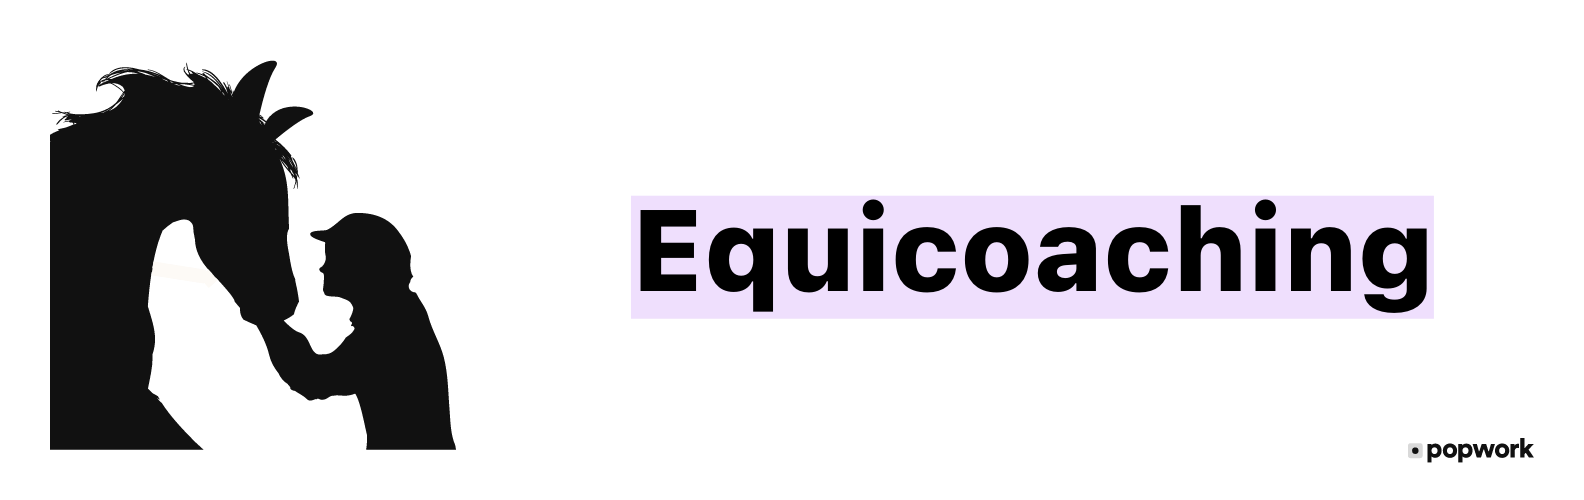 Equicoaching - Popwork